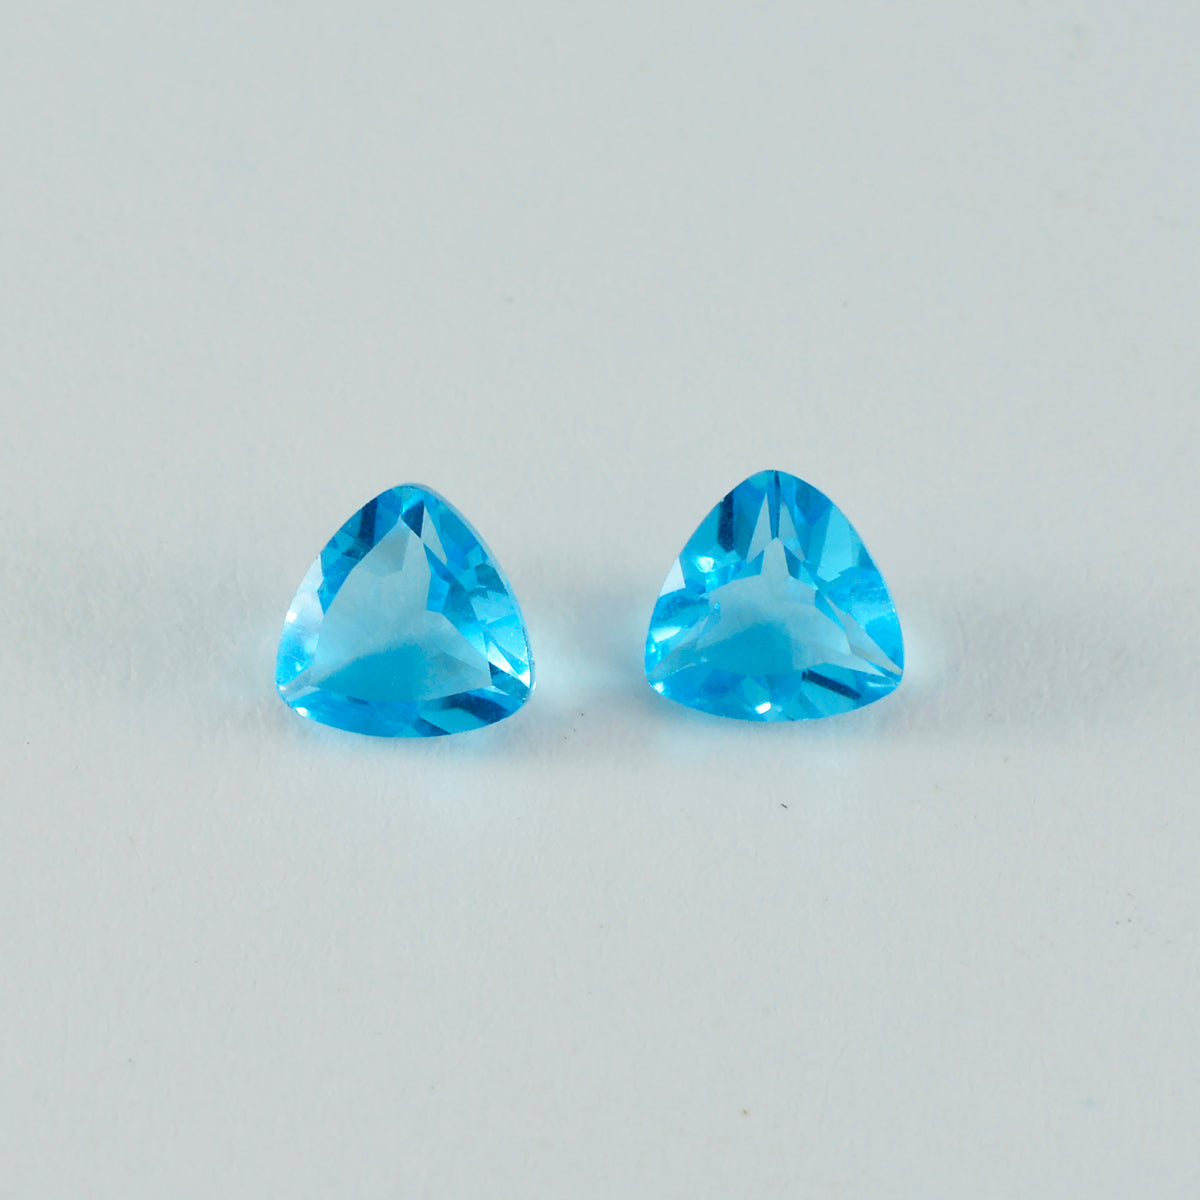 Riyogems 1 pieza de topacio azul CZ facetado 12x12 mm forma de billón piedra preciosa de calidad increíble